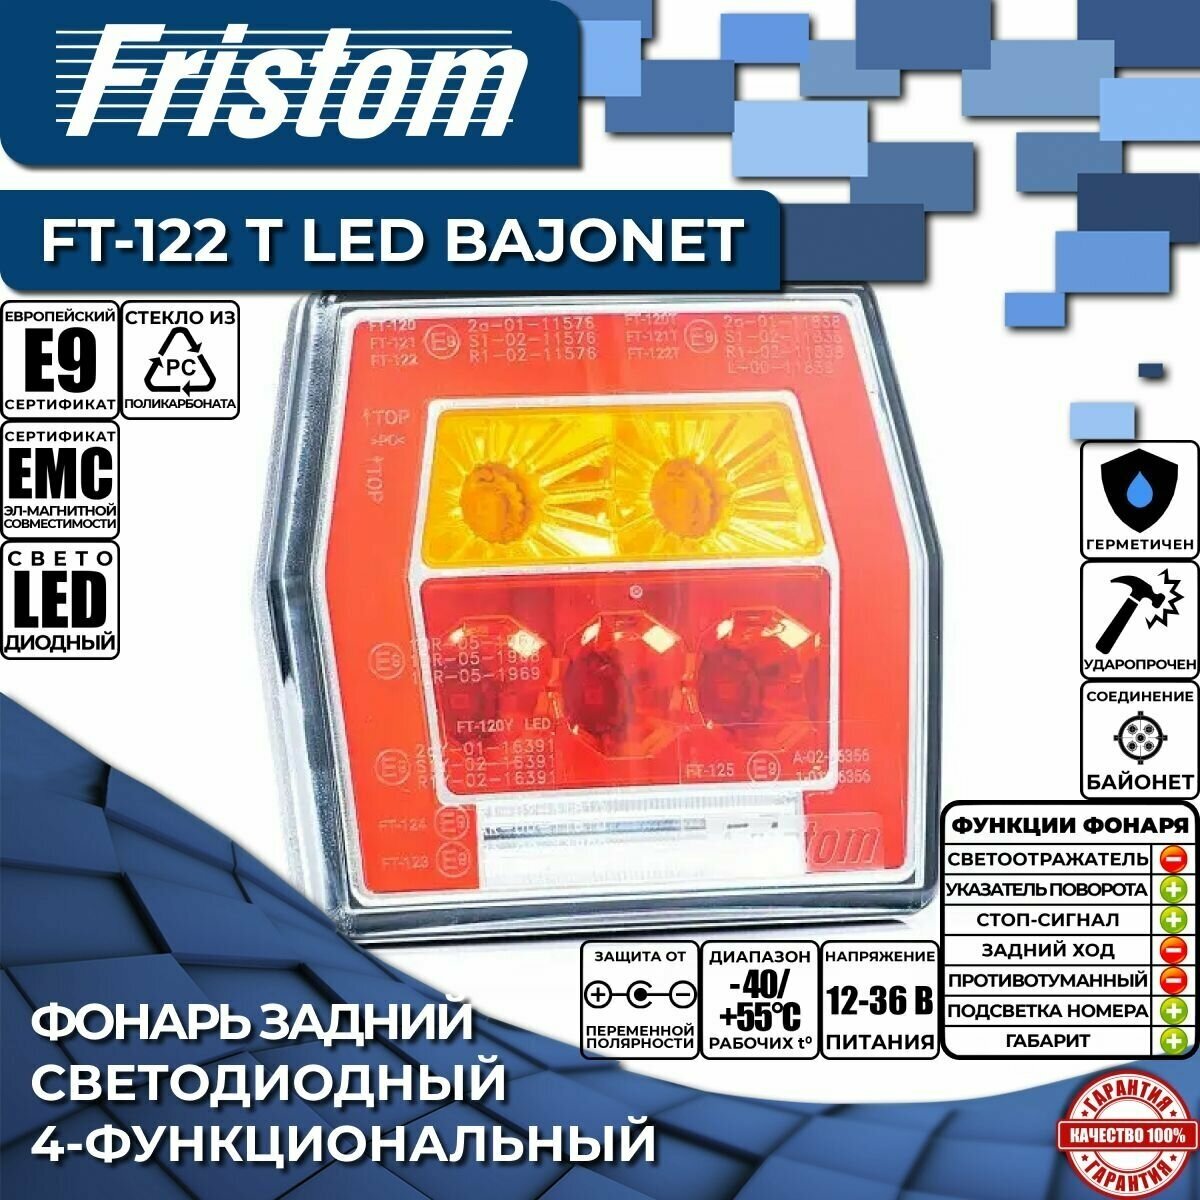 Фонарь задний светодиодный Fristom FT-122 T LED BAJONET 4-функциональный соединение BAJONET без ответного разъема (1 шт.)